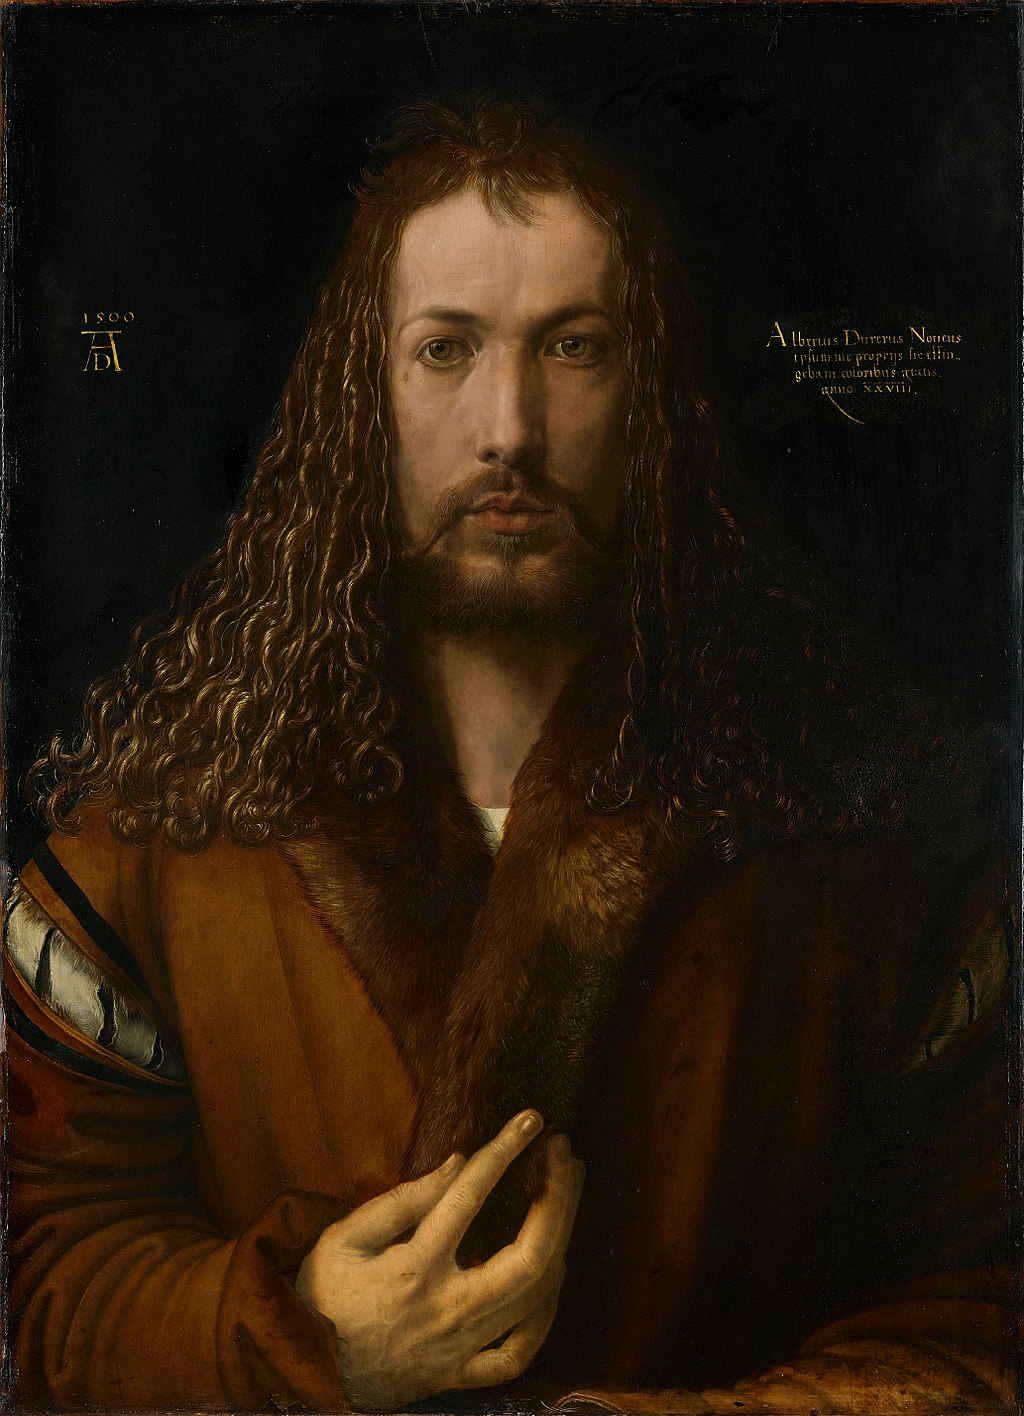 Albrecht Durer's Self Portrait of 1500